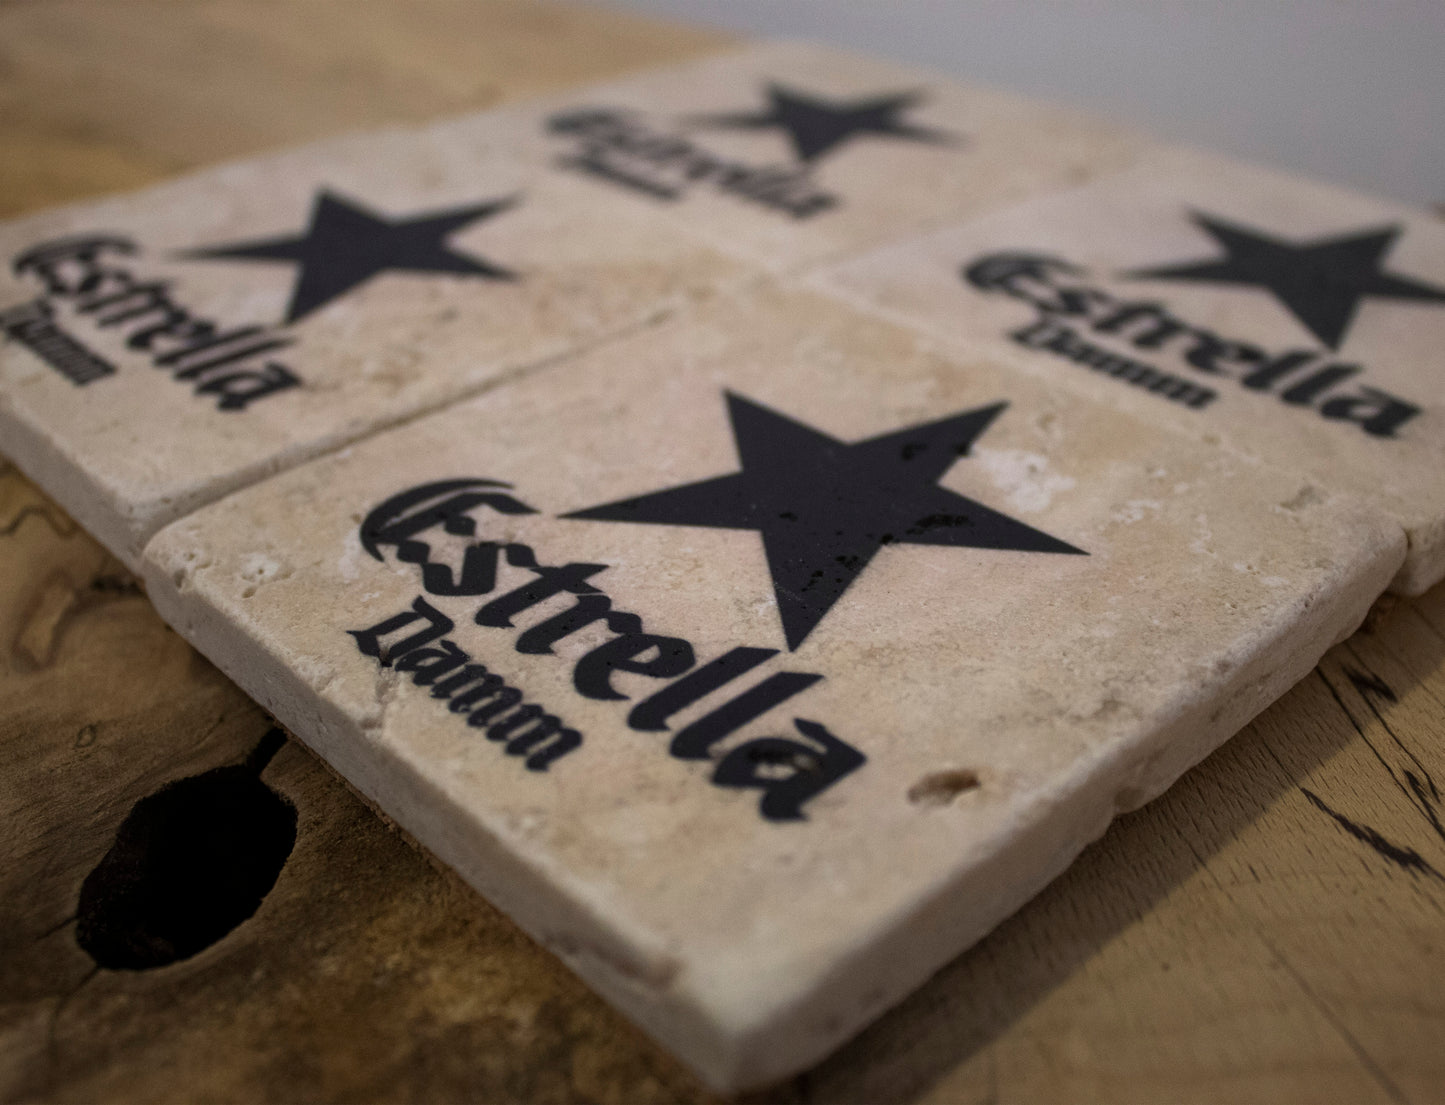 Estrella Beer Collection Stone Coasters (Set Of 4)